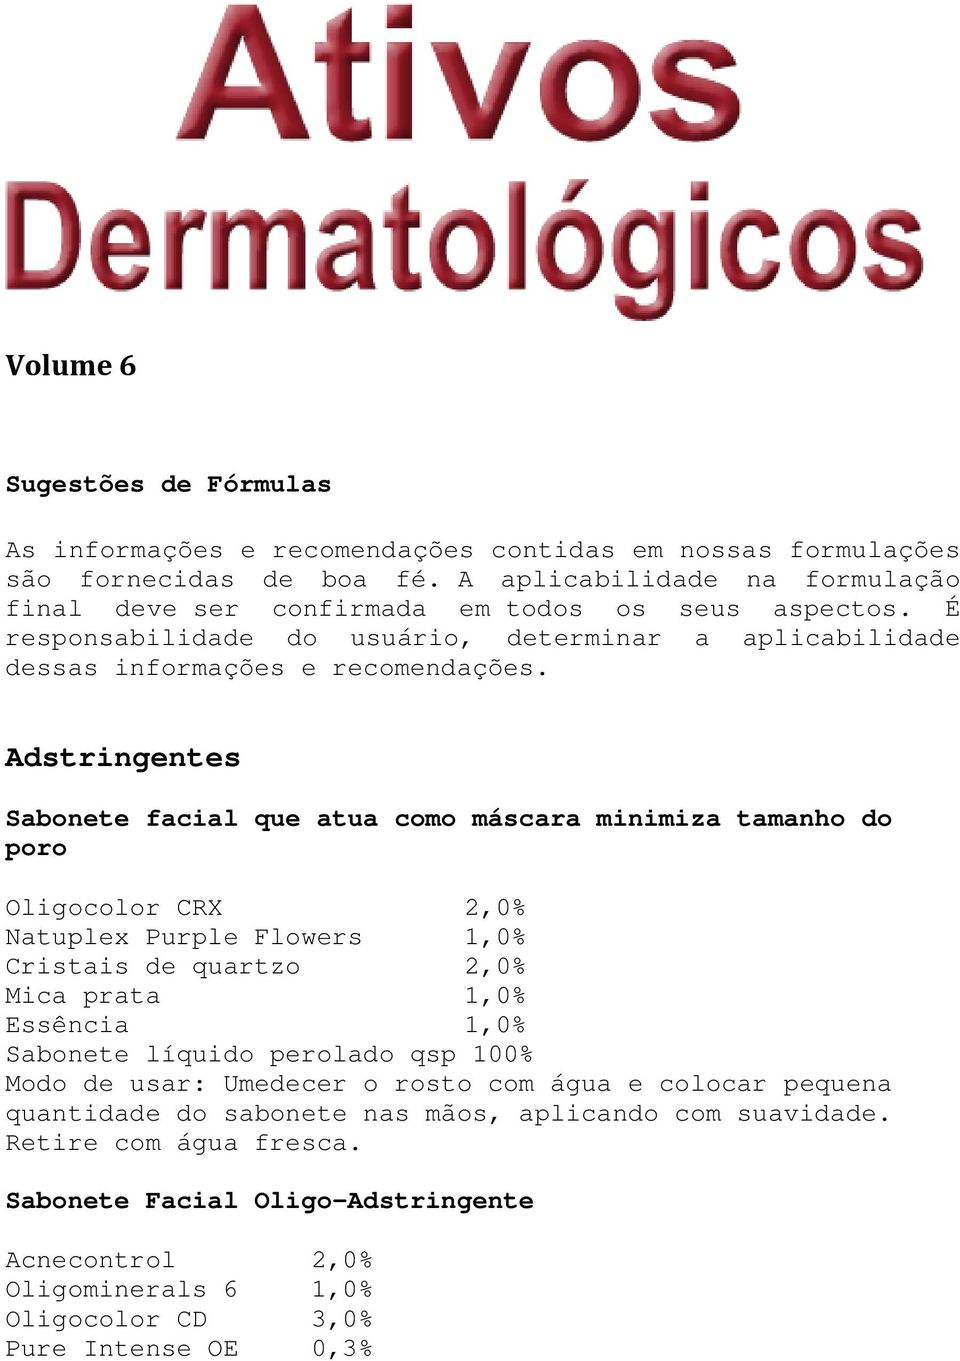 Adstringentes Sabonete facial que atua como máscara minimiza tamanho do poro Oligocolor CRX 2,0% Natuplex Purple Flowers 1,0% Cristais de quartzo 2,0% Mica prata 1,0% Essência 1,0% Sabonete